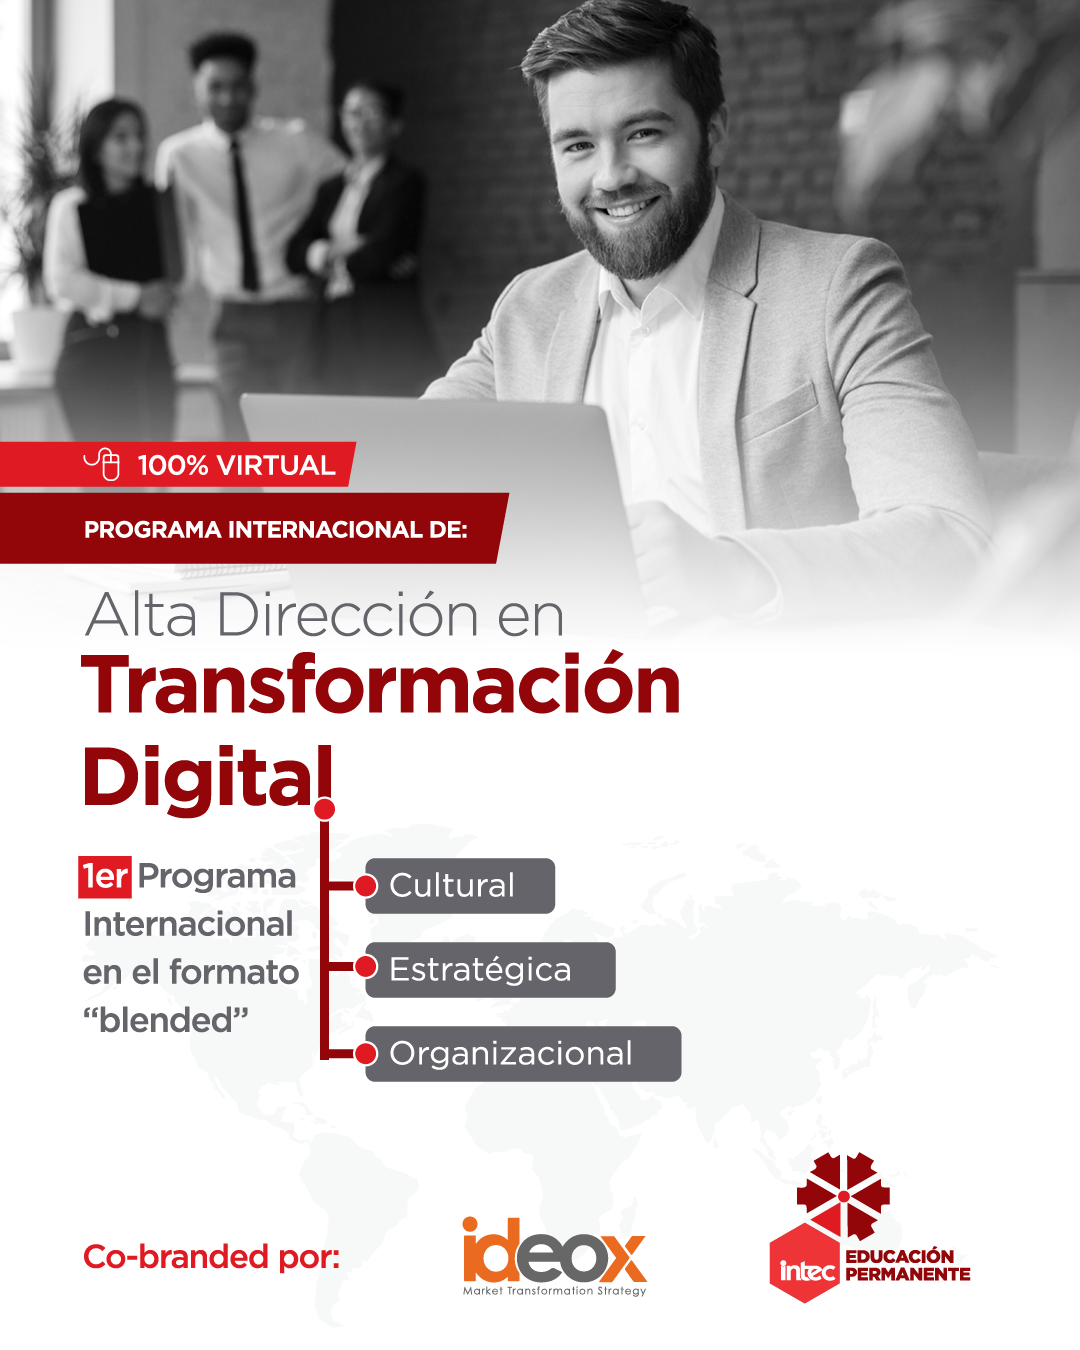 Educación Permanente del INTEC impartirá programa en Alta Dirección en Transformación Digital